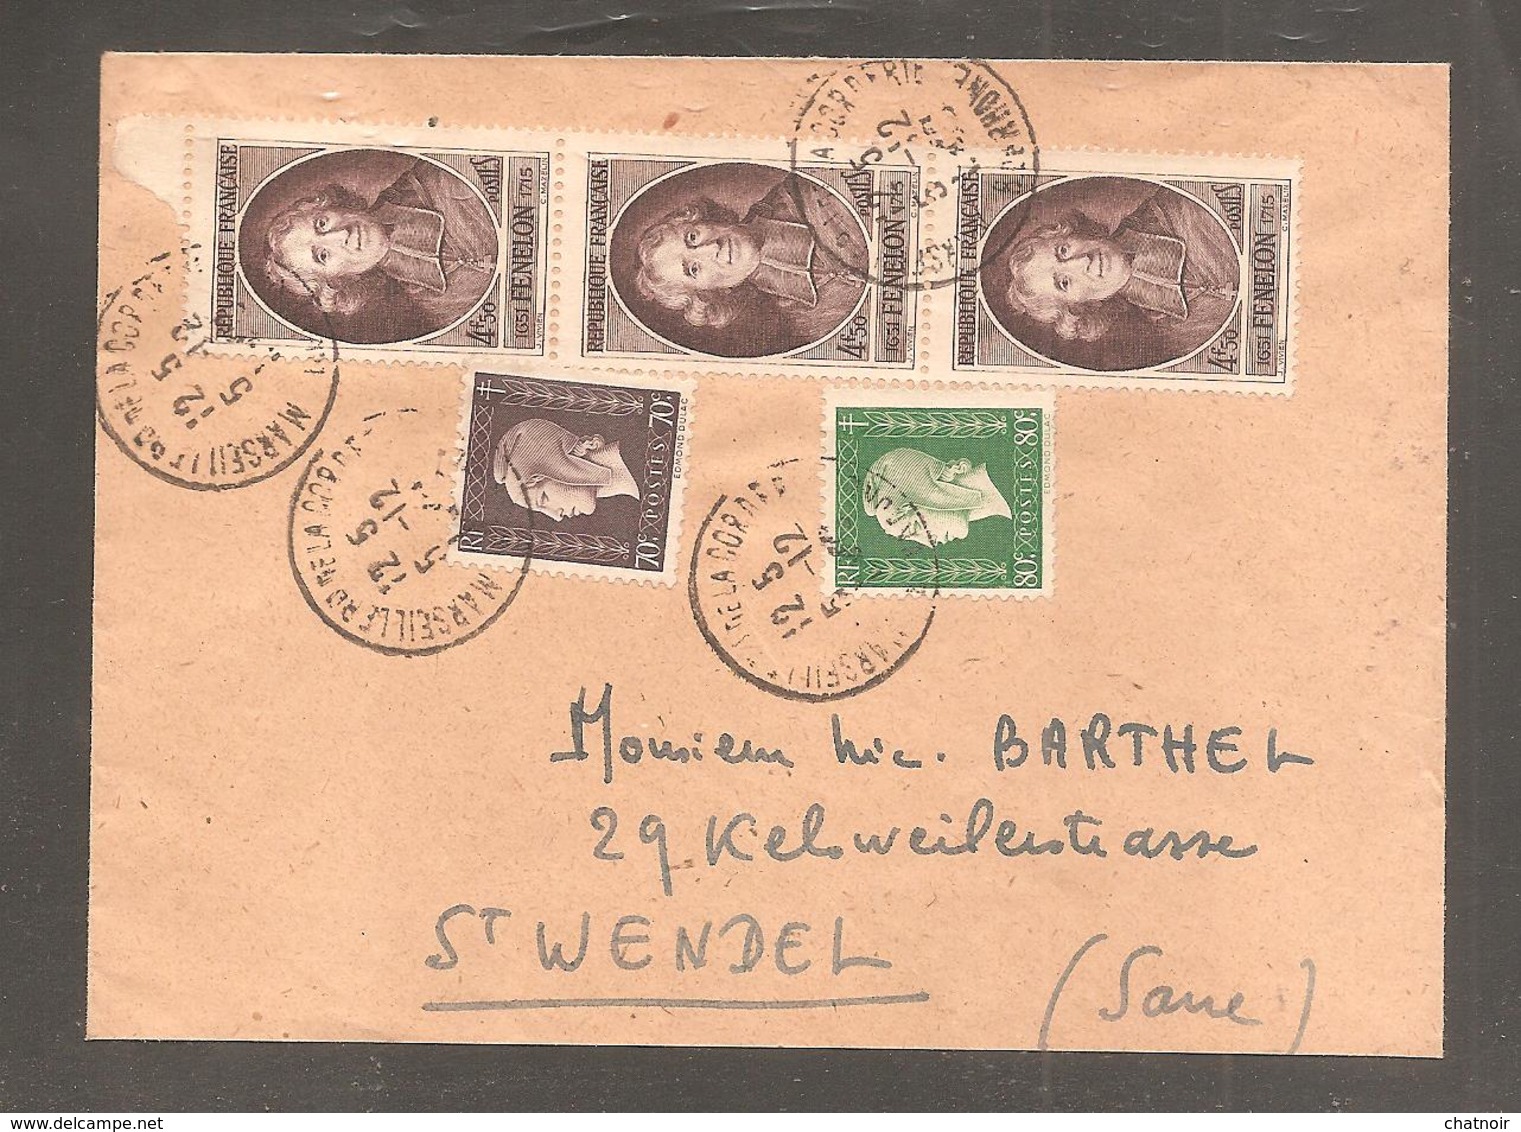 Envelop Oblit  Marseille  4,50 Fenelon X 3   70c Et 80c  Dulac   Pour La SARRE - 1944-45 Marianne De Dulac